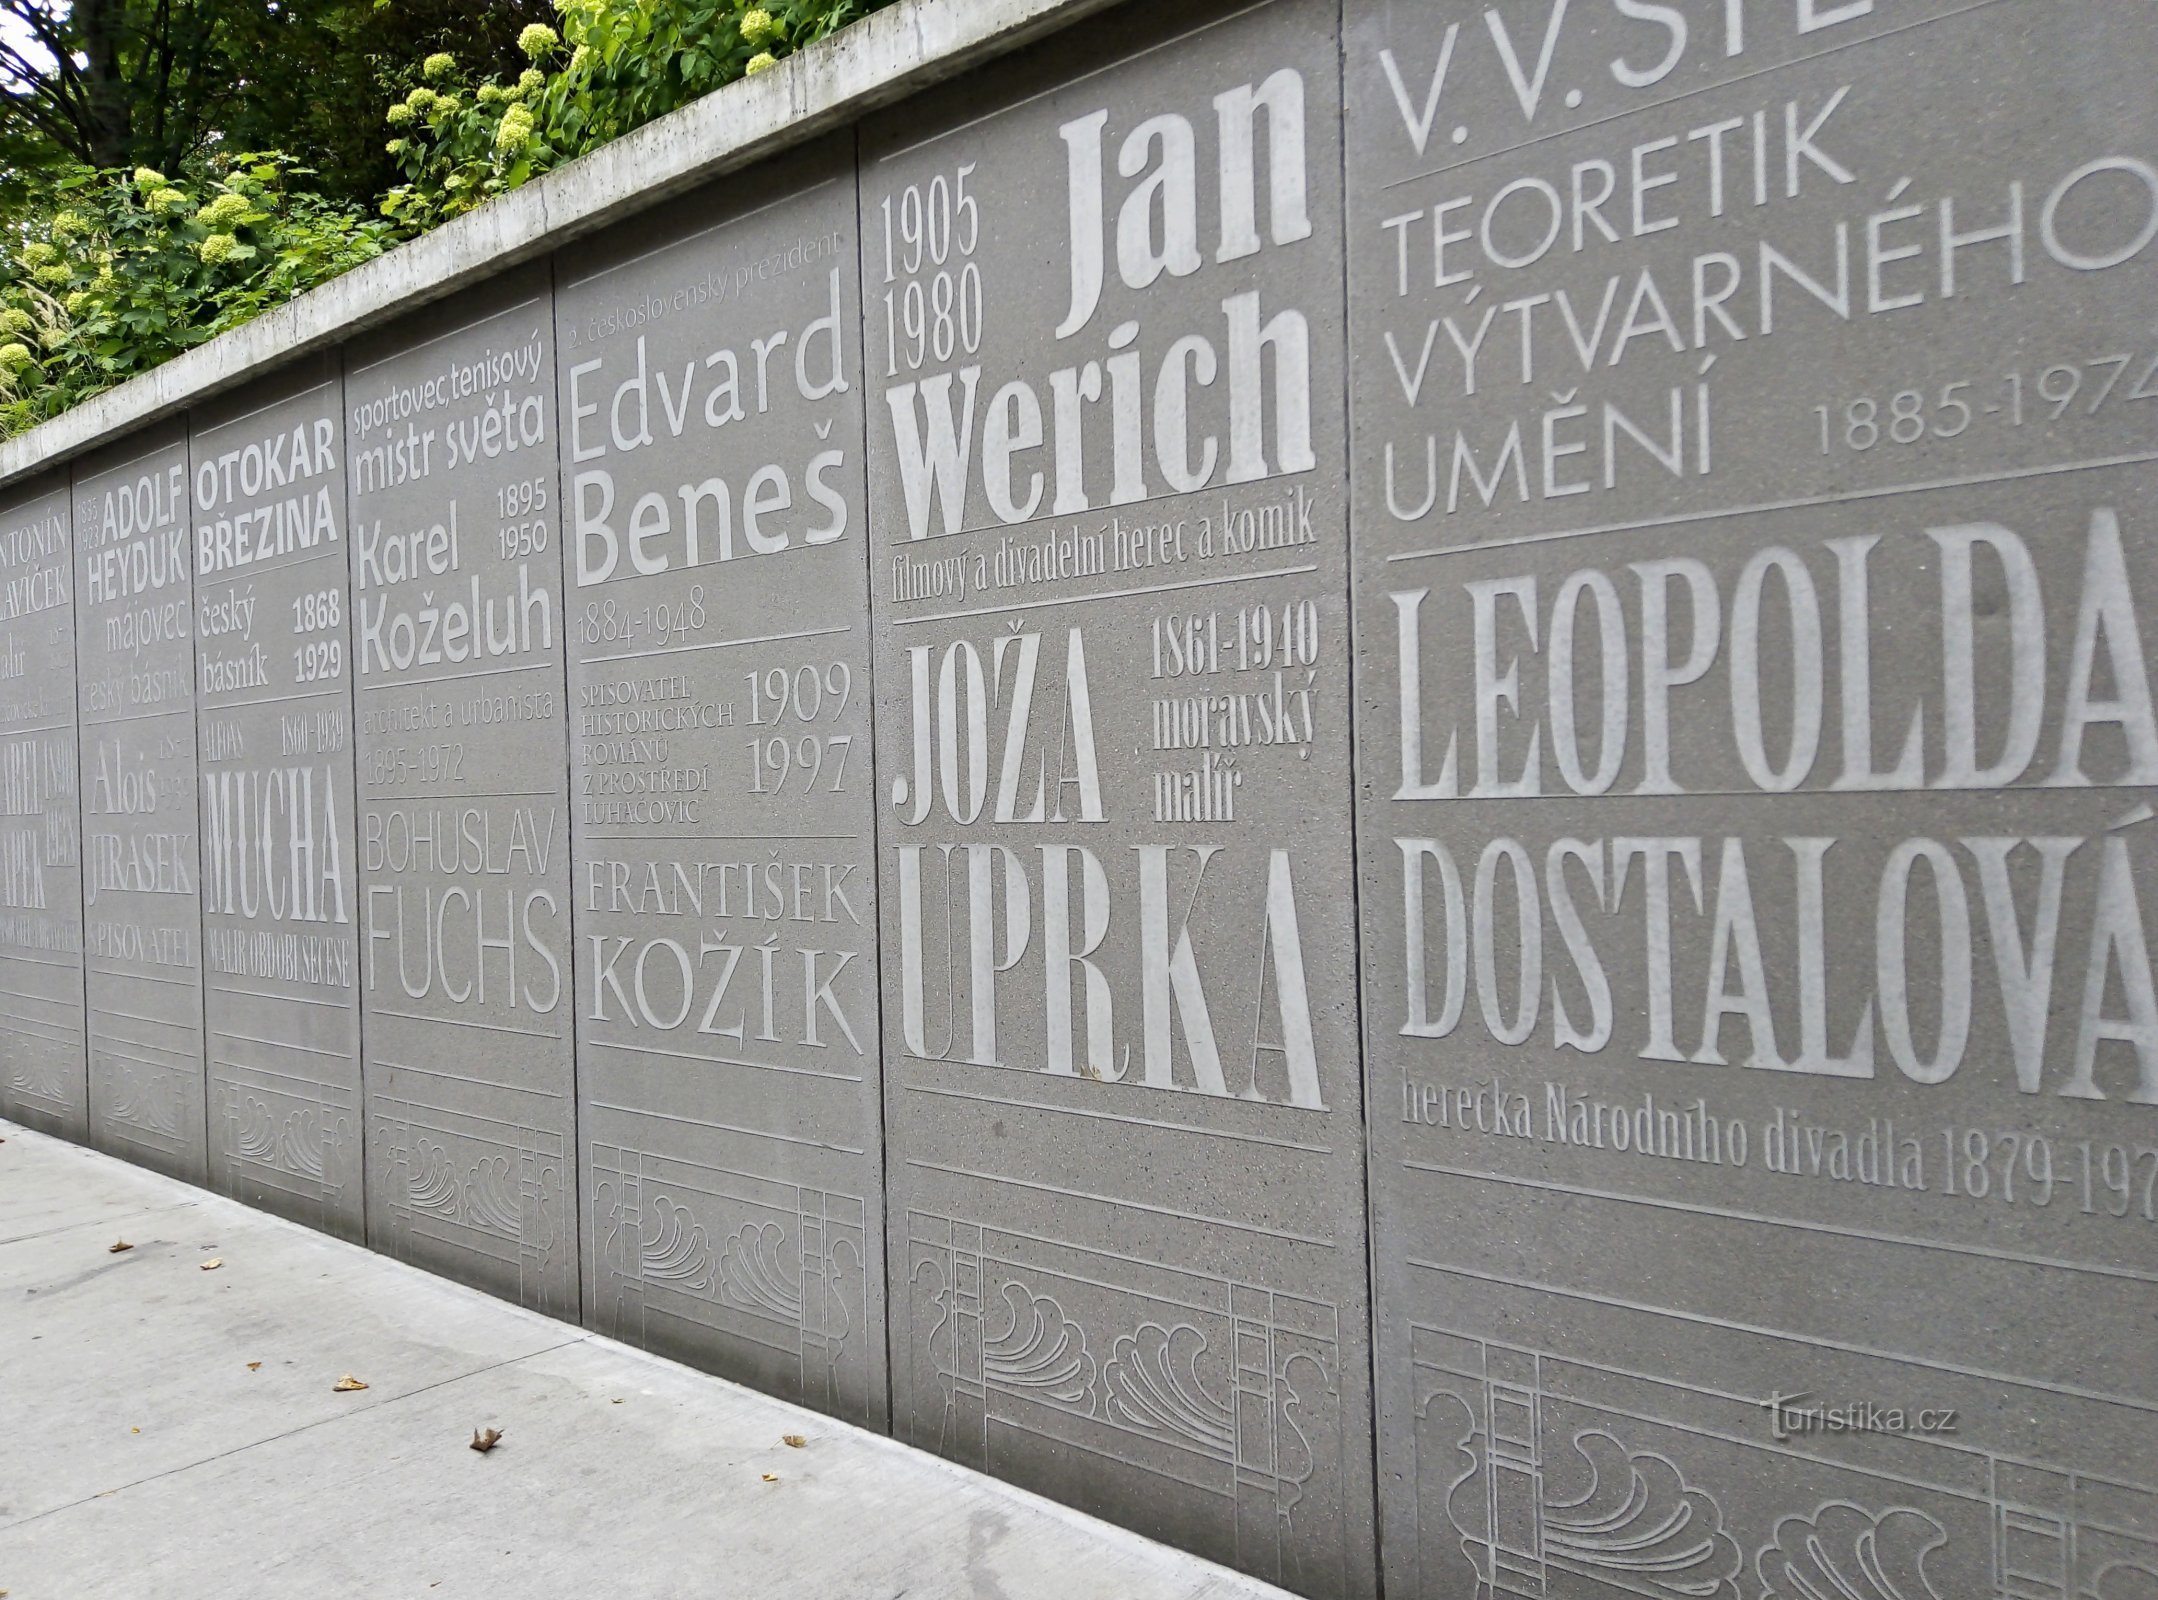 Luhačovice – Zid časti, oziroma po tej ulici so se sprehajali tudi znani ljudje...